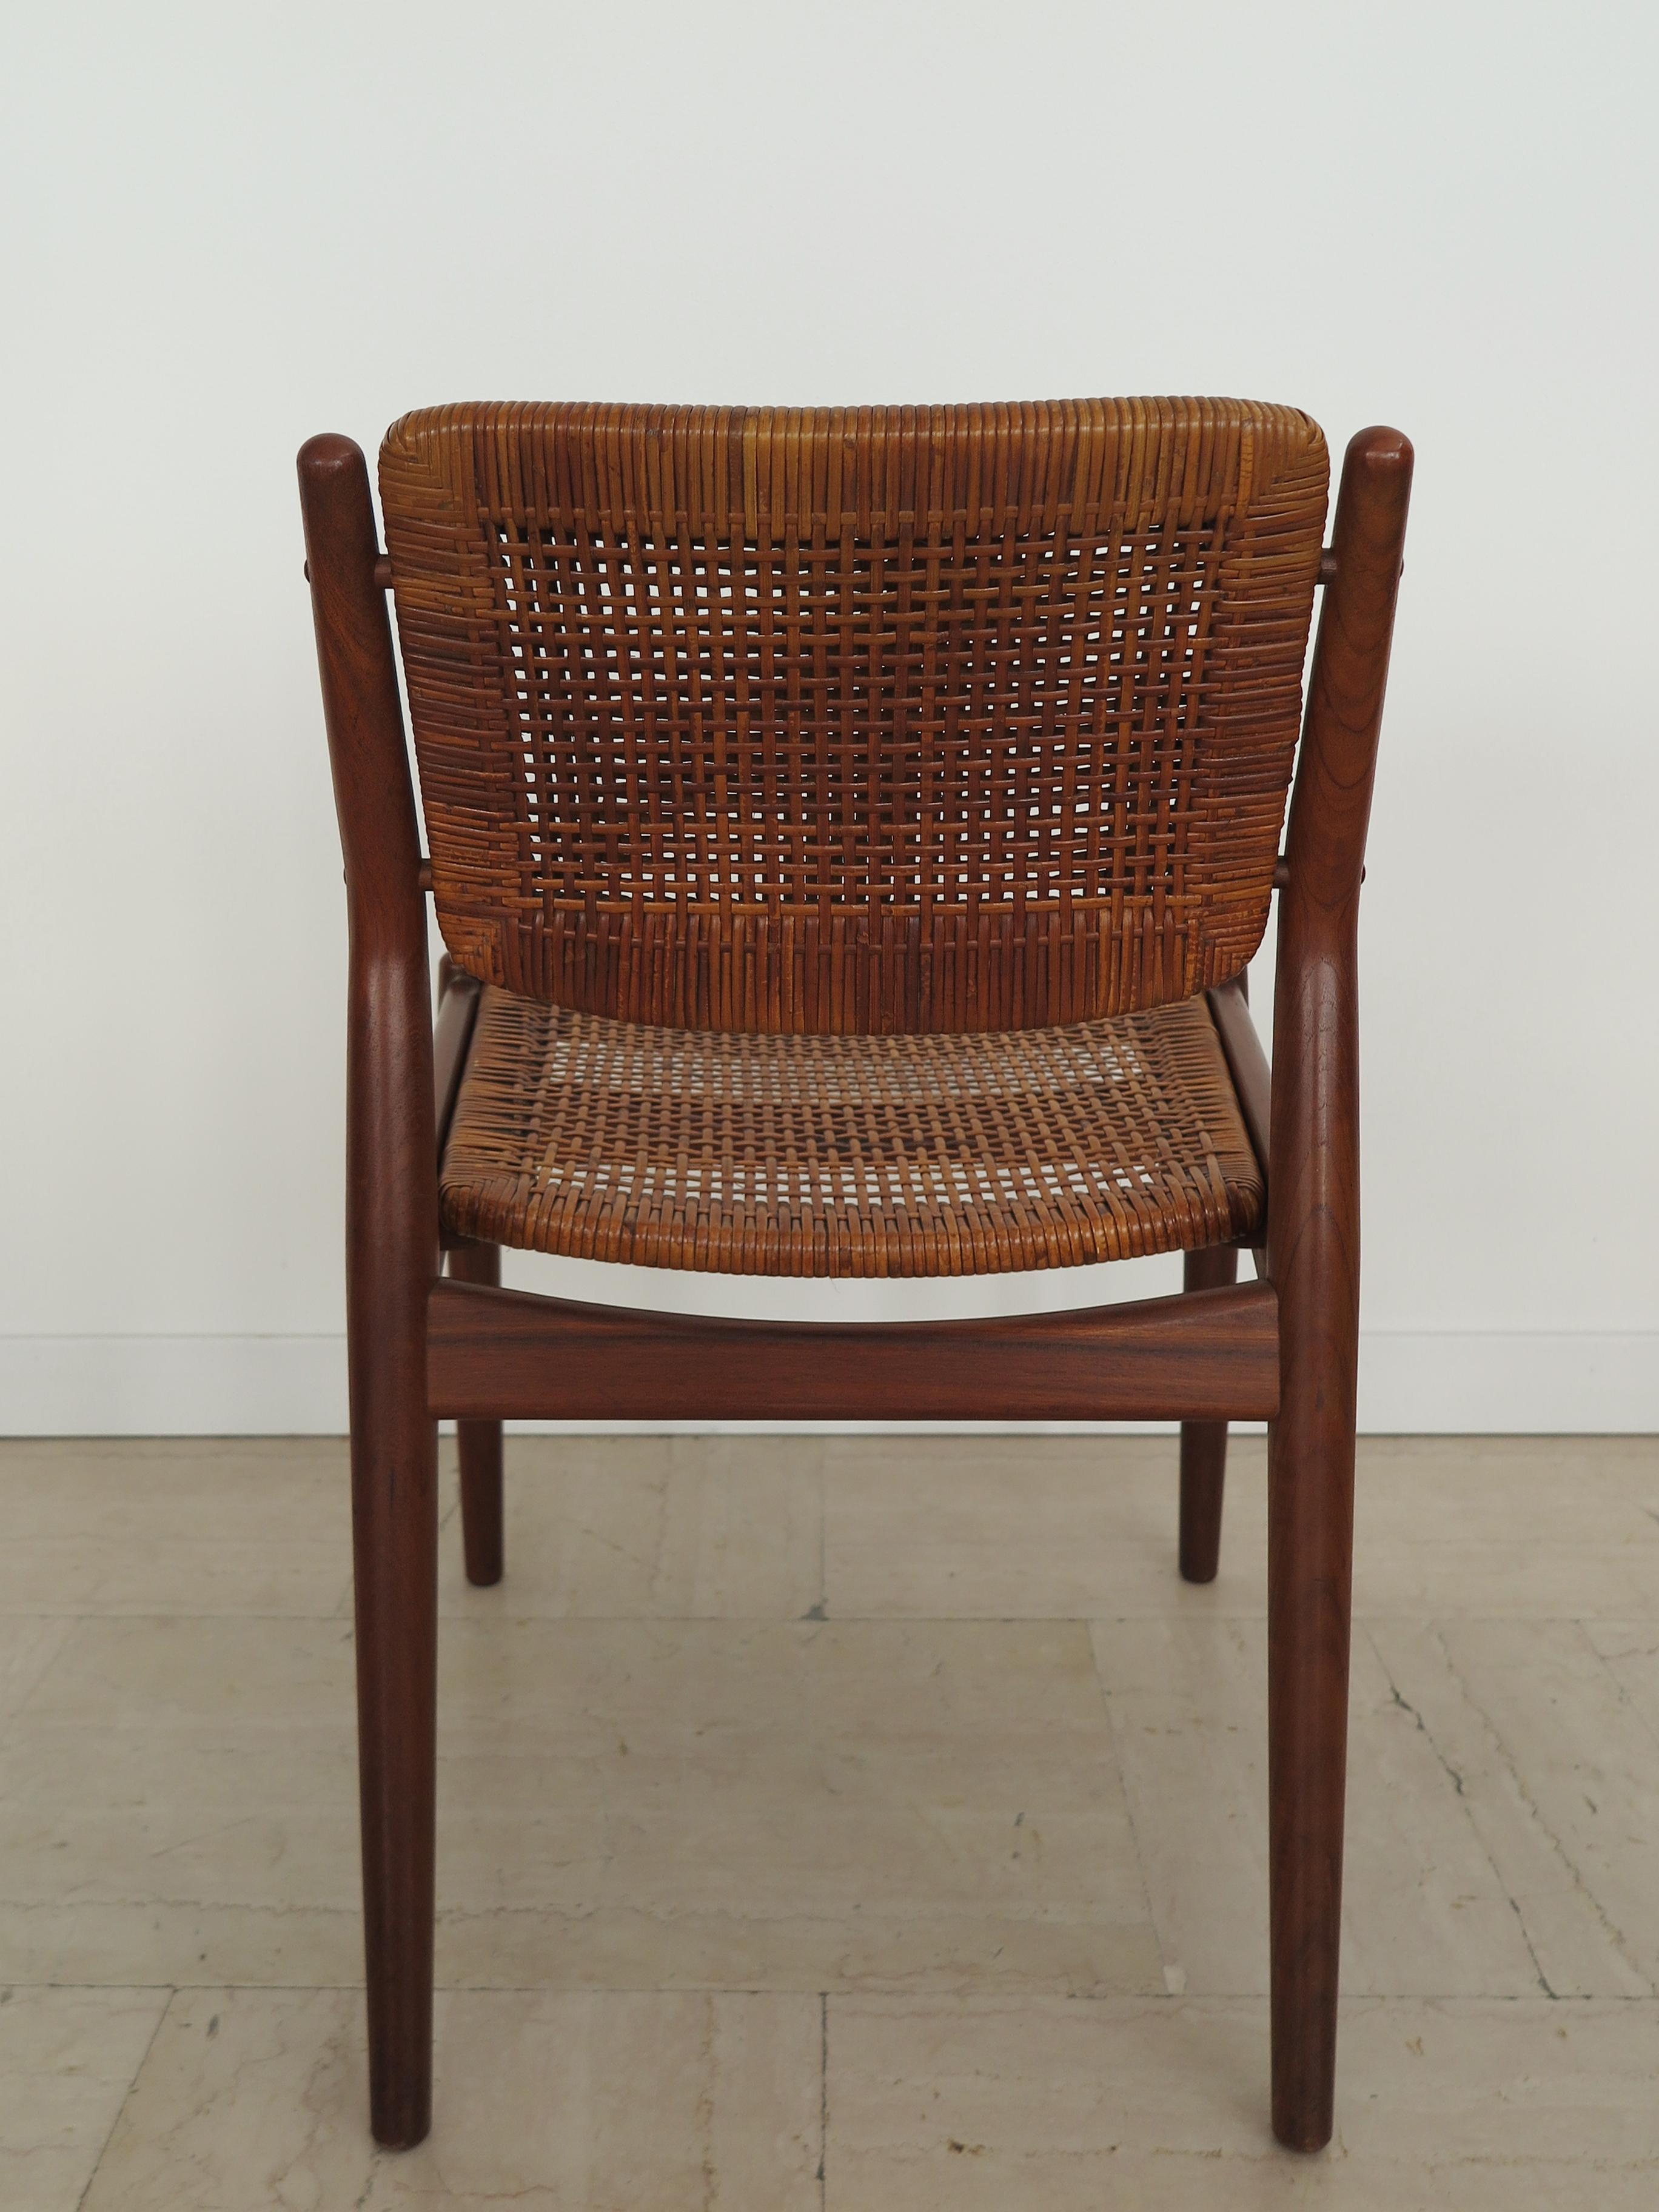 Arne Vodder Midcentury Scandinavian Teak Rattan Chairs for Sibast 1950s For Sale 2